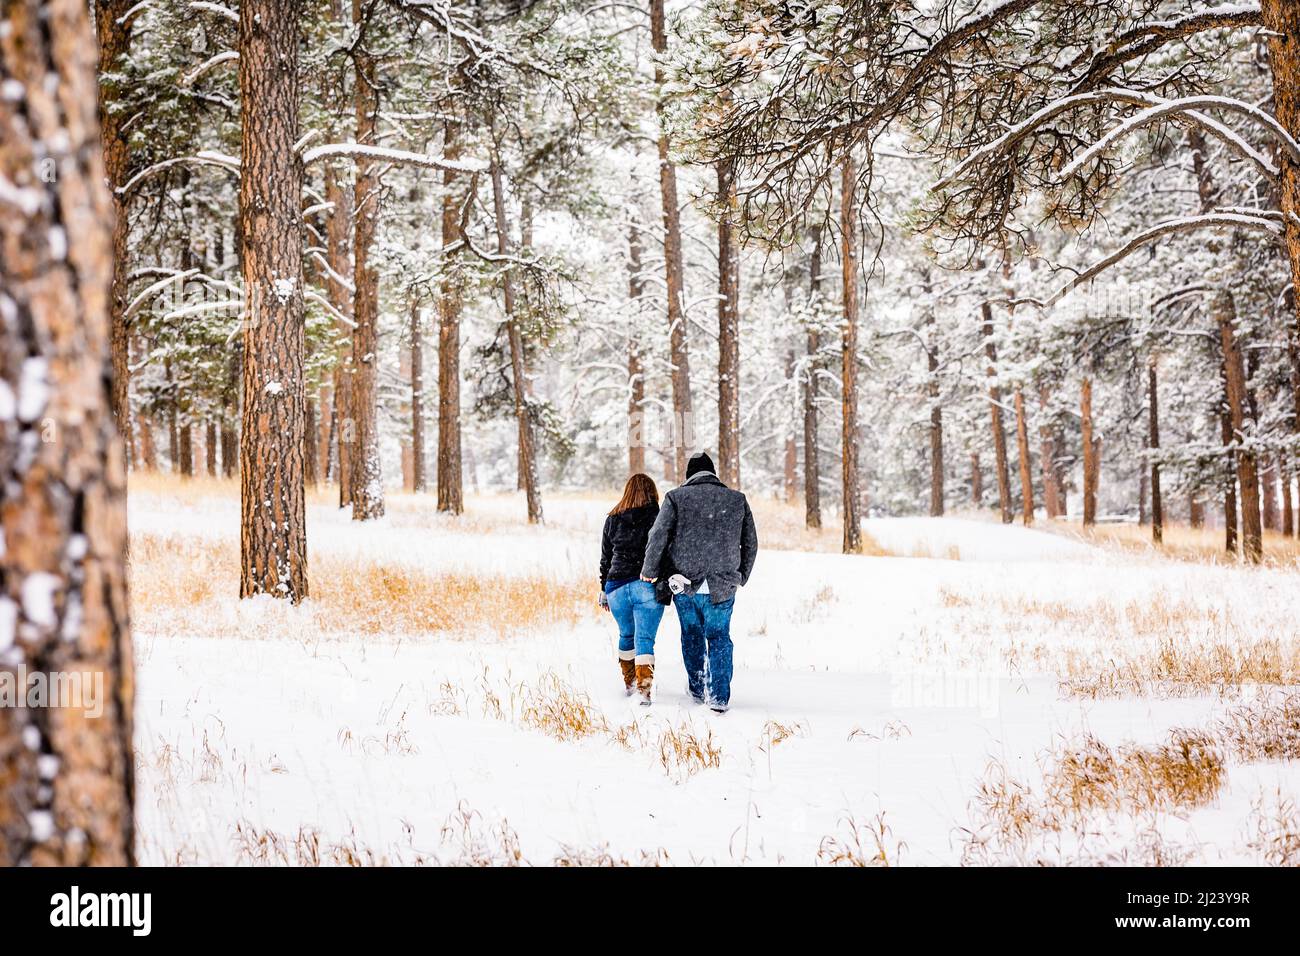 Mann und Frau gehen in einem verschneiten Kiefernwald von der Kamera weg Stockfoto